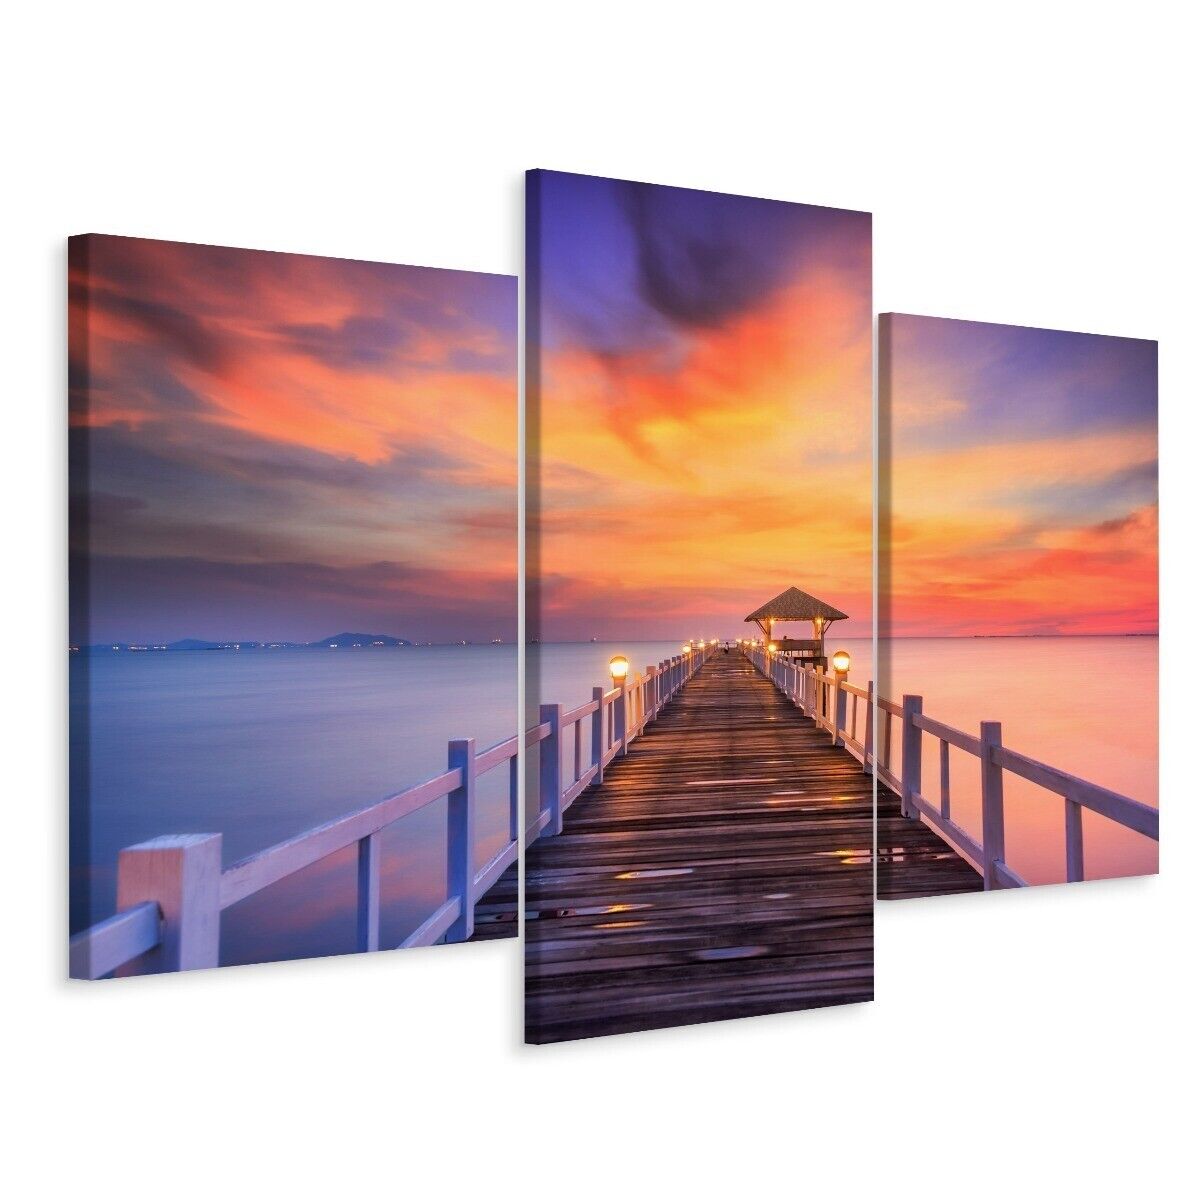 Leinwandbild Canvas Print Deko Wandbild Natur Landschaft Sonnenuntergang am Pier